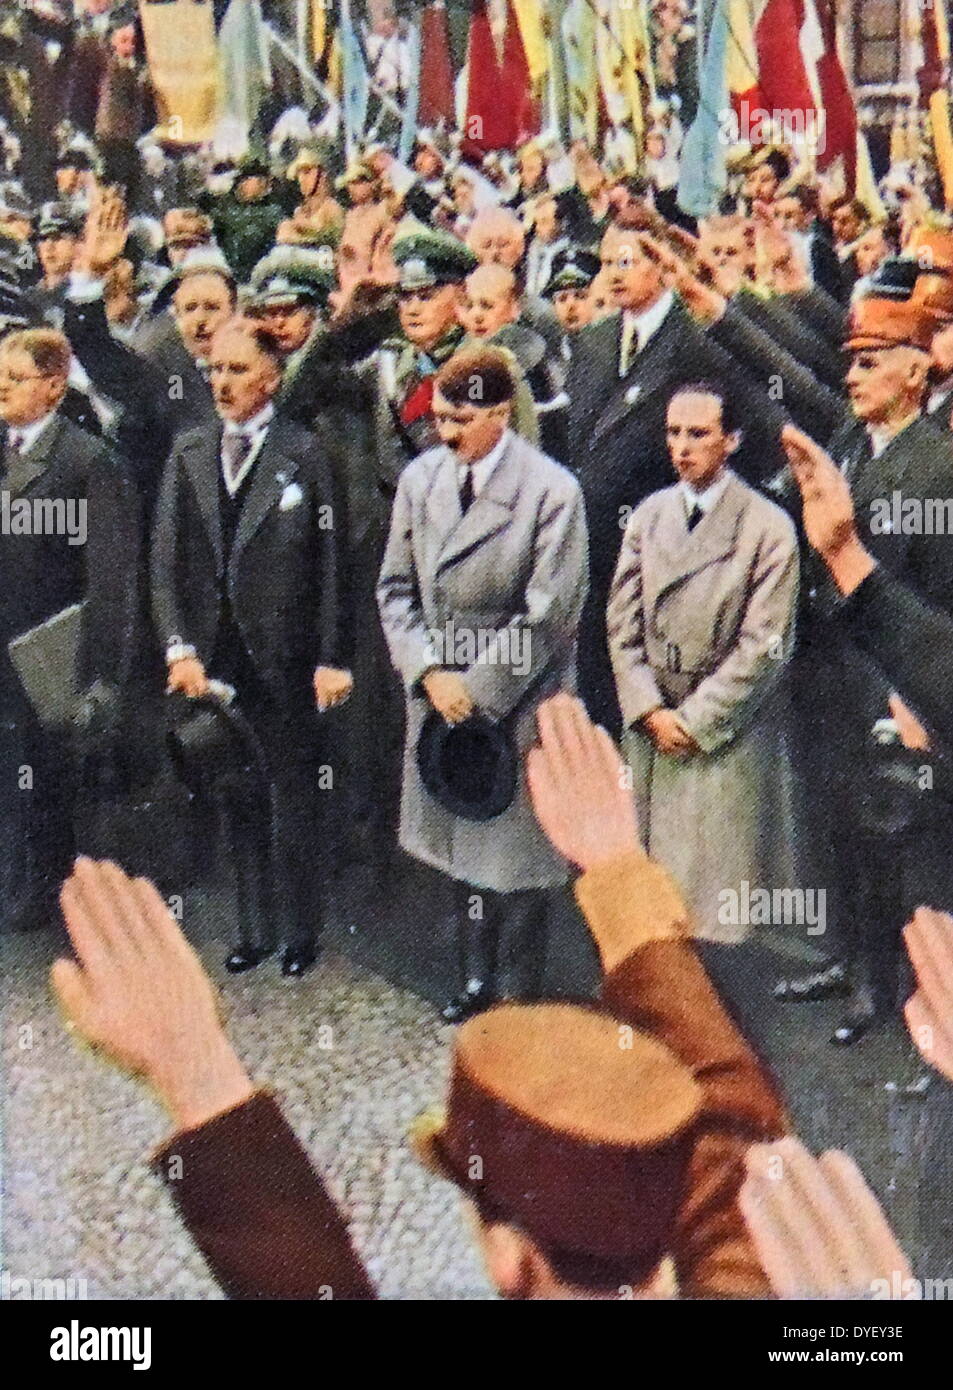 Vice Chancellor Von Papen, Adolf Hitler and Josef Goebbels circa 1933 Stock Photo